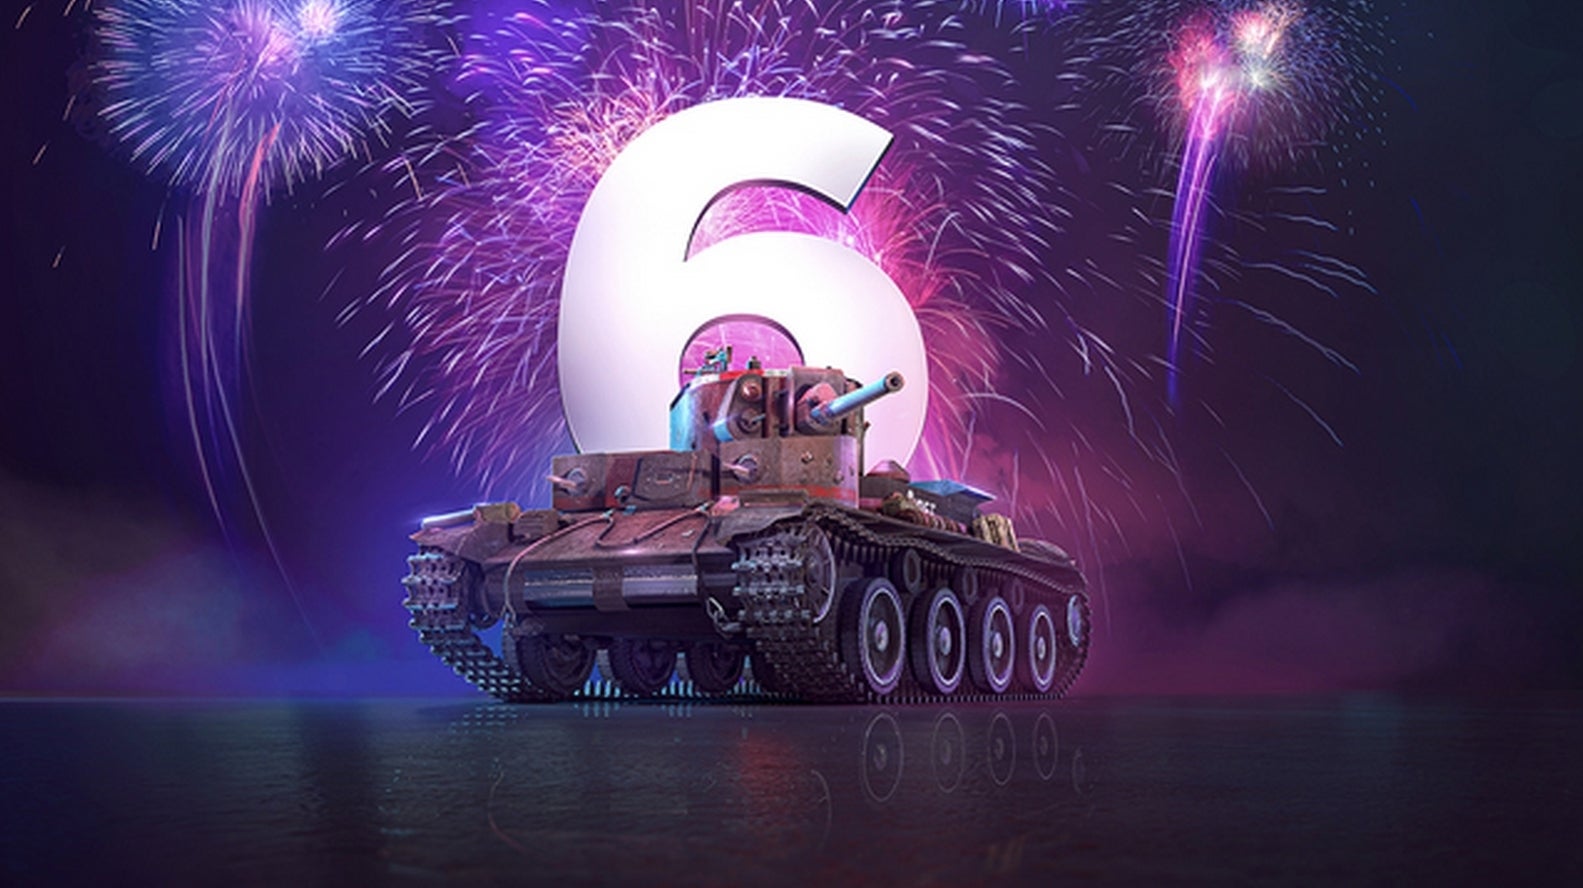 Bilder zu World of Tanks: Mercenaries feiert seinen sechsten Geburtstag mit 20 Millionen Spielern und einem exklusiven Geschenk für euch